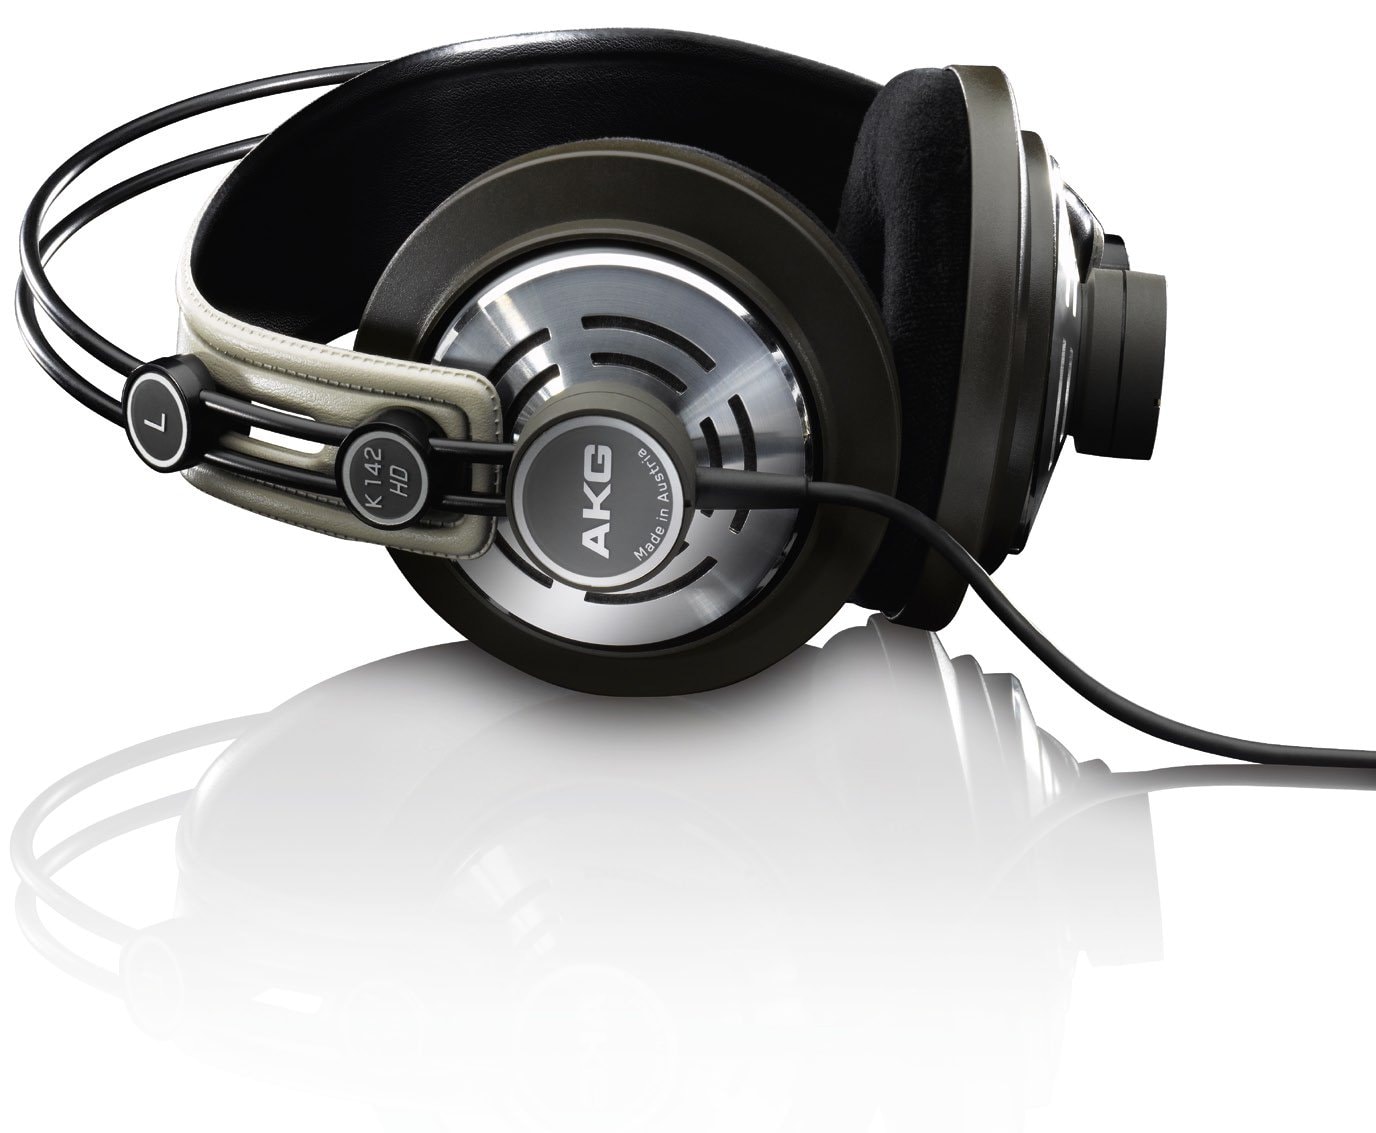 Articles neufs et d'occasion à vendre dans la catégorie AKG Headphones